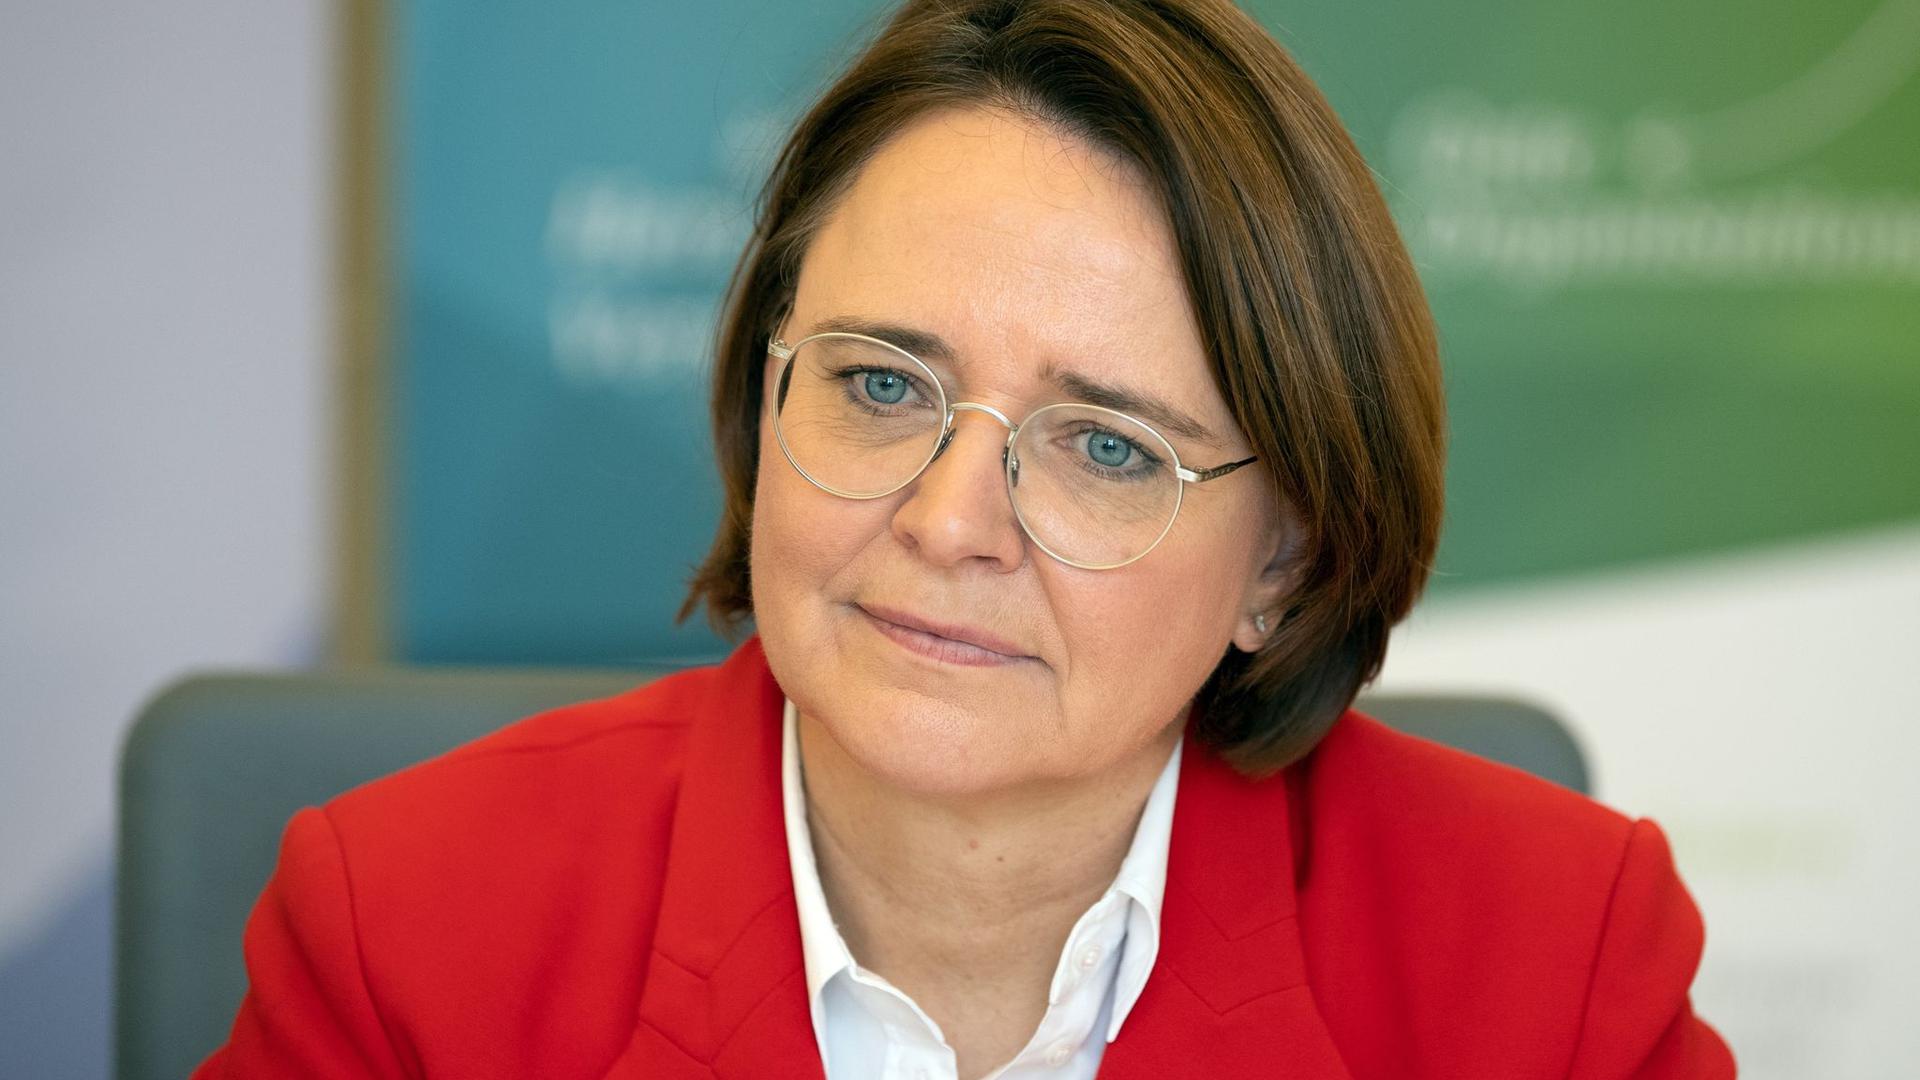 CDU-Politikerin Annette Widmann-Mauz fordert eine Studie über Polizei-Rassismus.